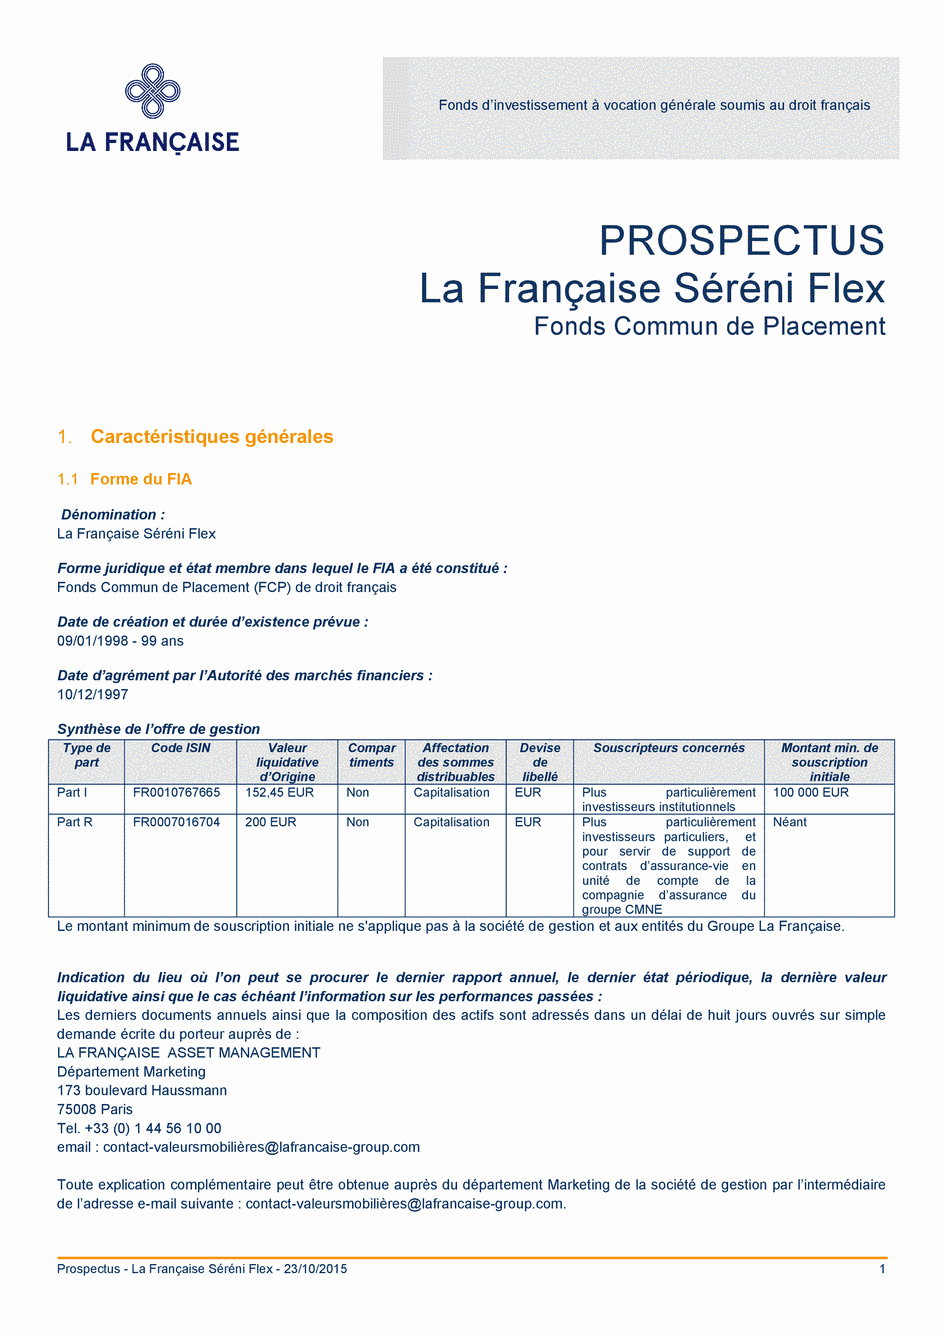 Prospectus La Française Séréni Flex - Part I - 23/10/2015 - Français